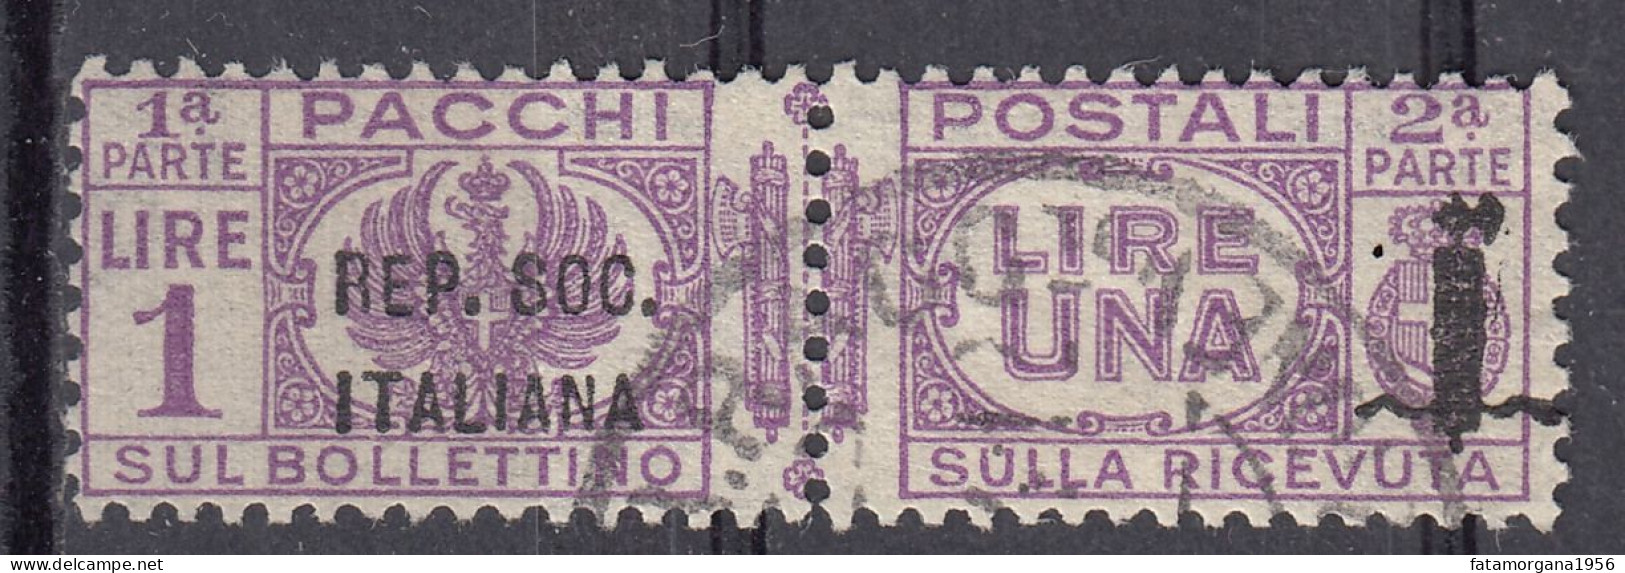 ITALIA, REPUBBLICA SOCIALE - 1944 - Francobollo Usato Per Pacchi: Unificato 42. - Paketmarken